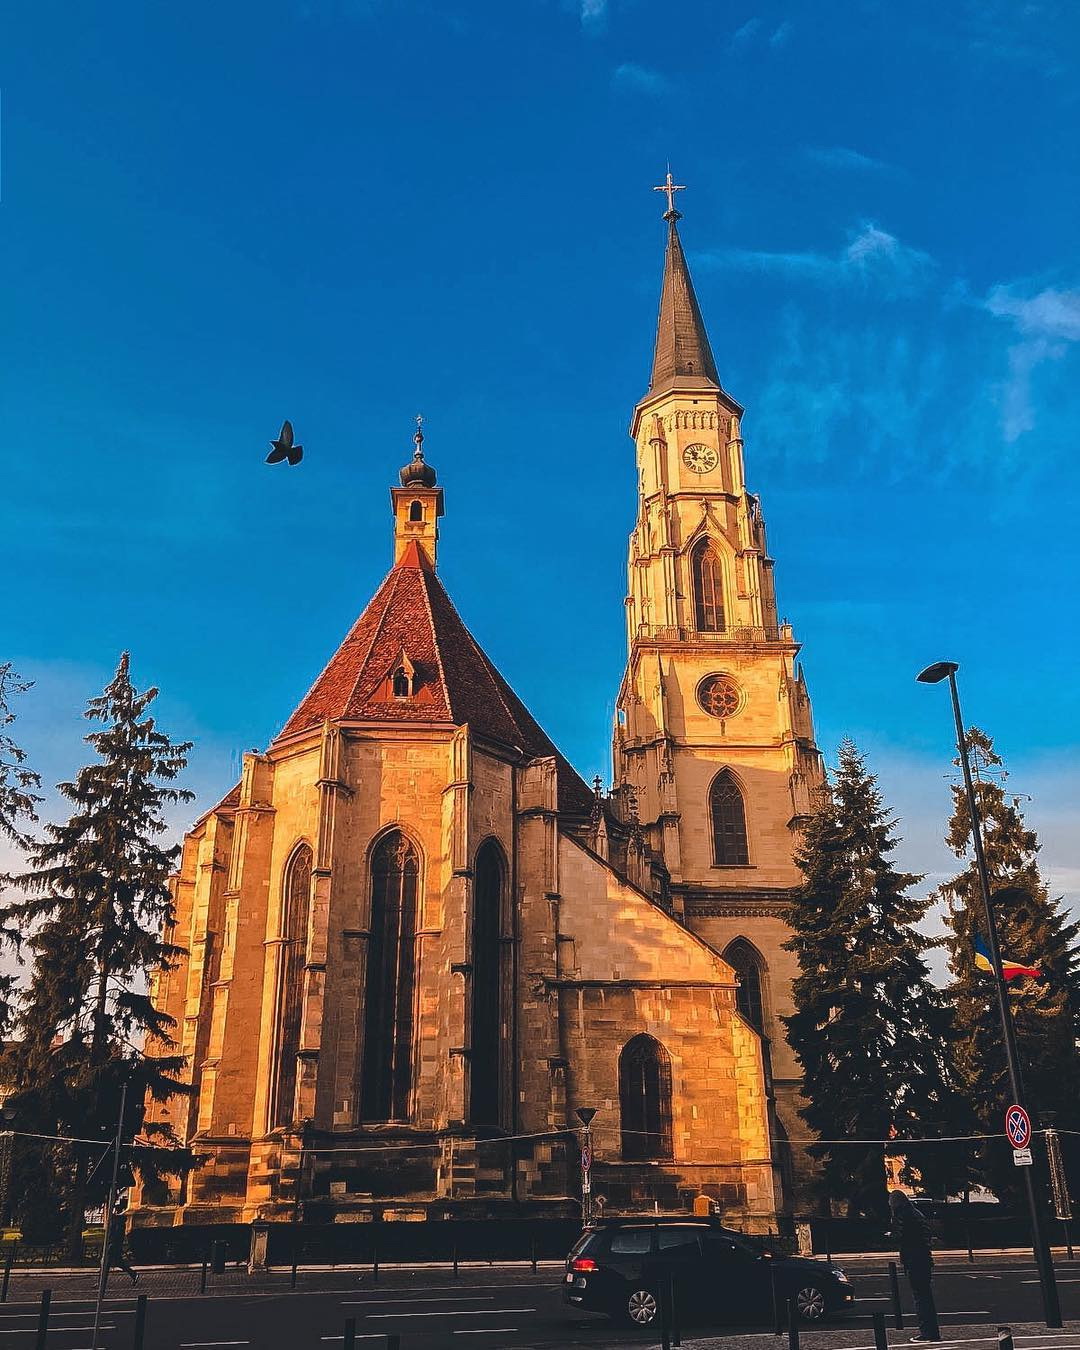 Cele mai frumoase poze din Cluj postate săptămâna trecută pe Instagram